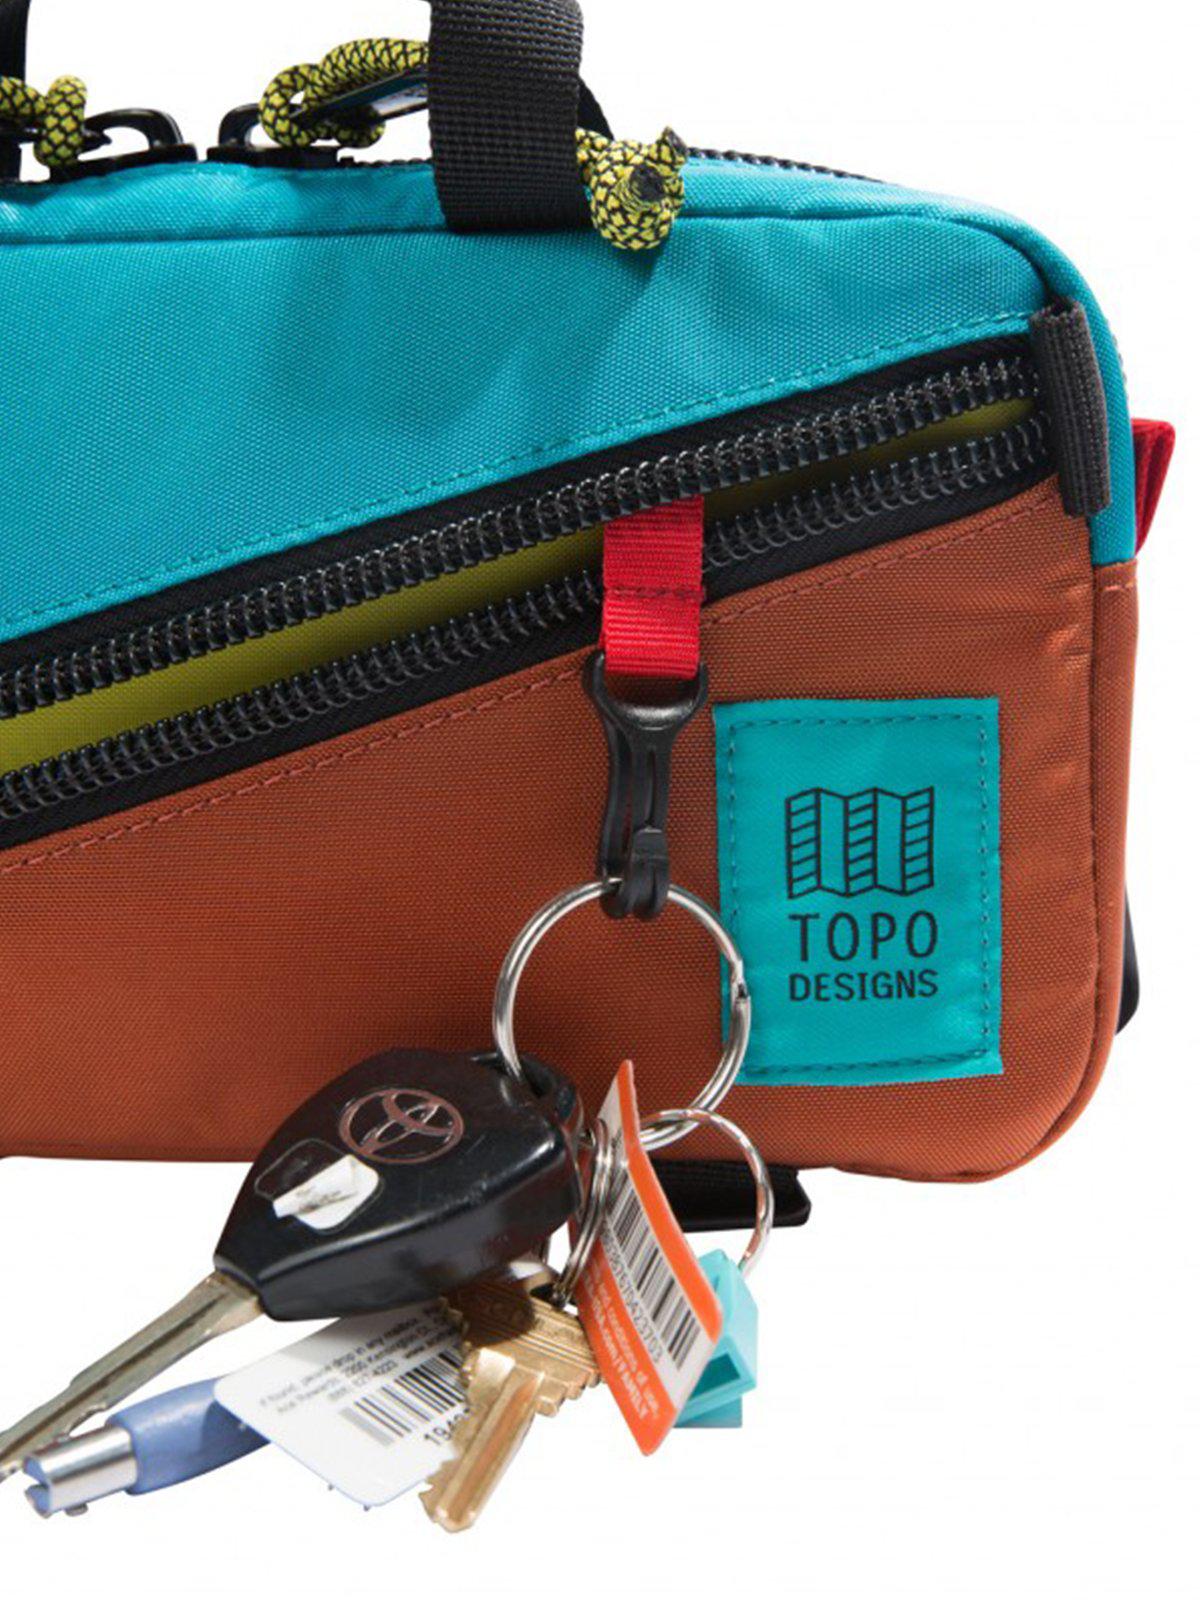 Topo Designs Mini Quick Pack Green Green